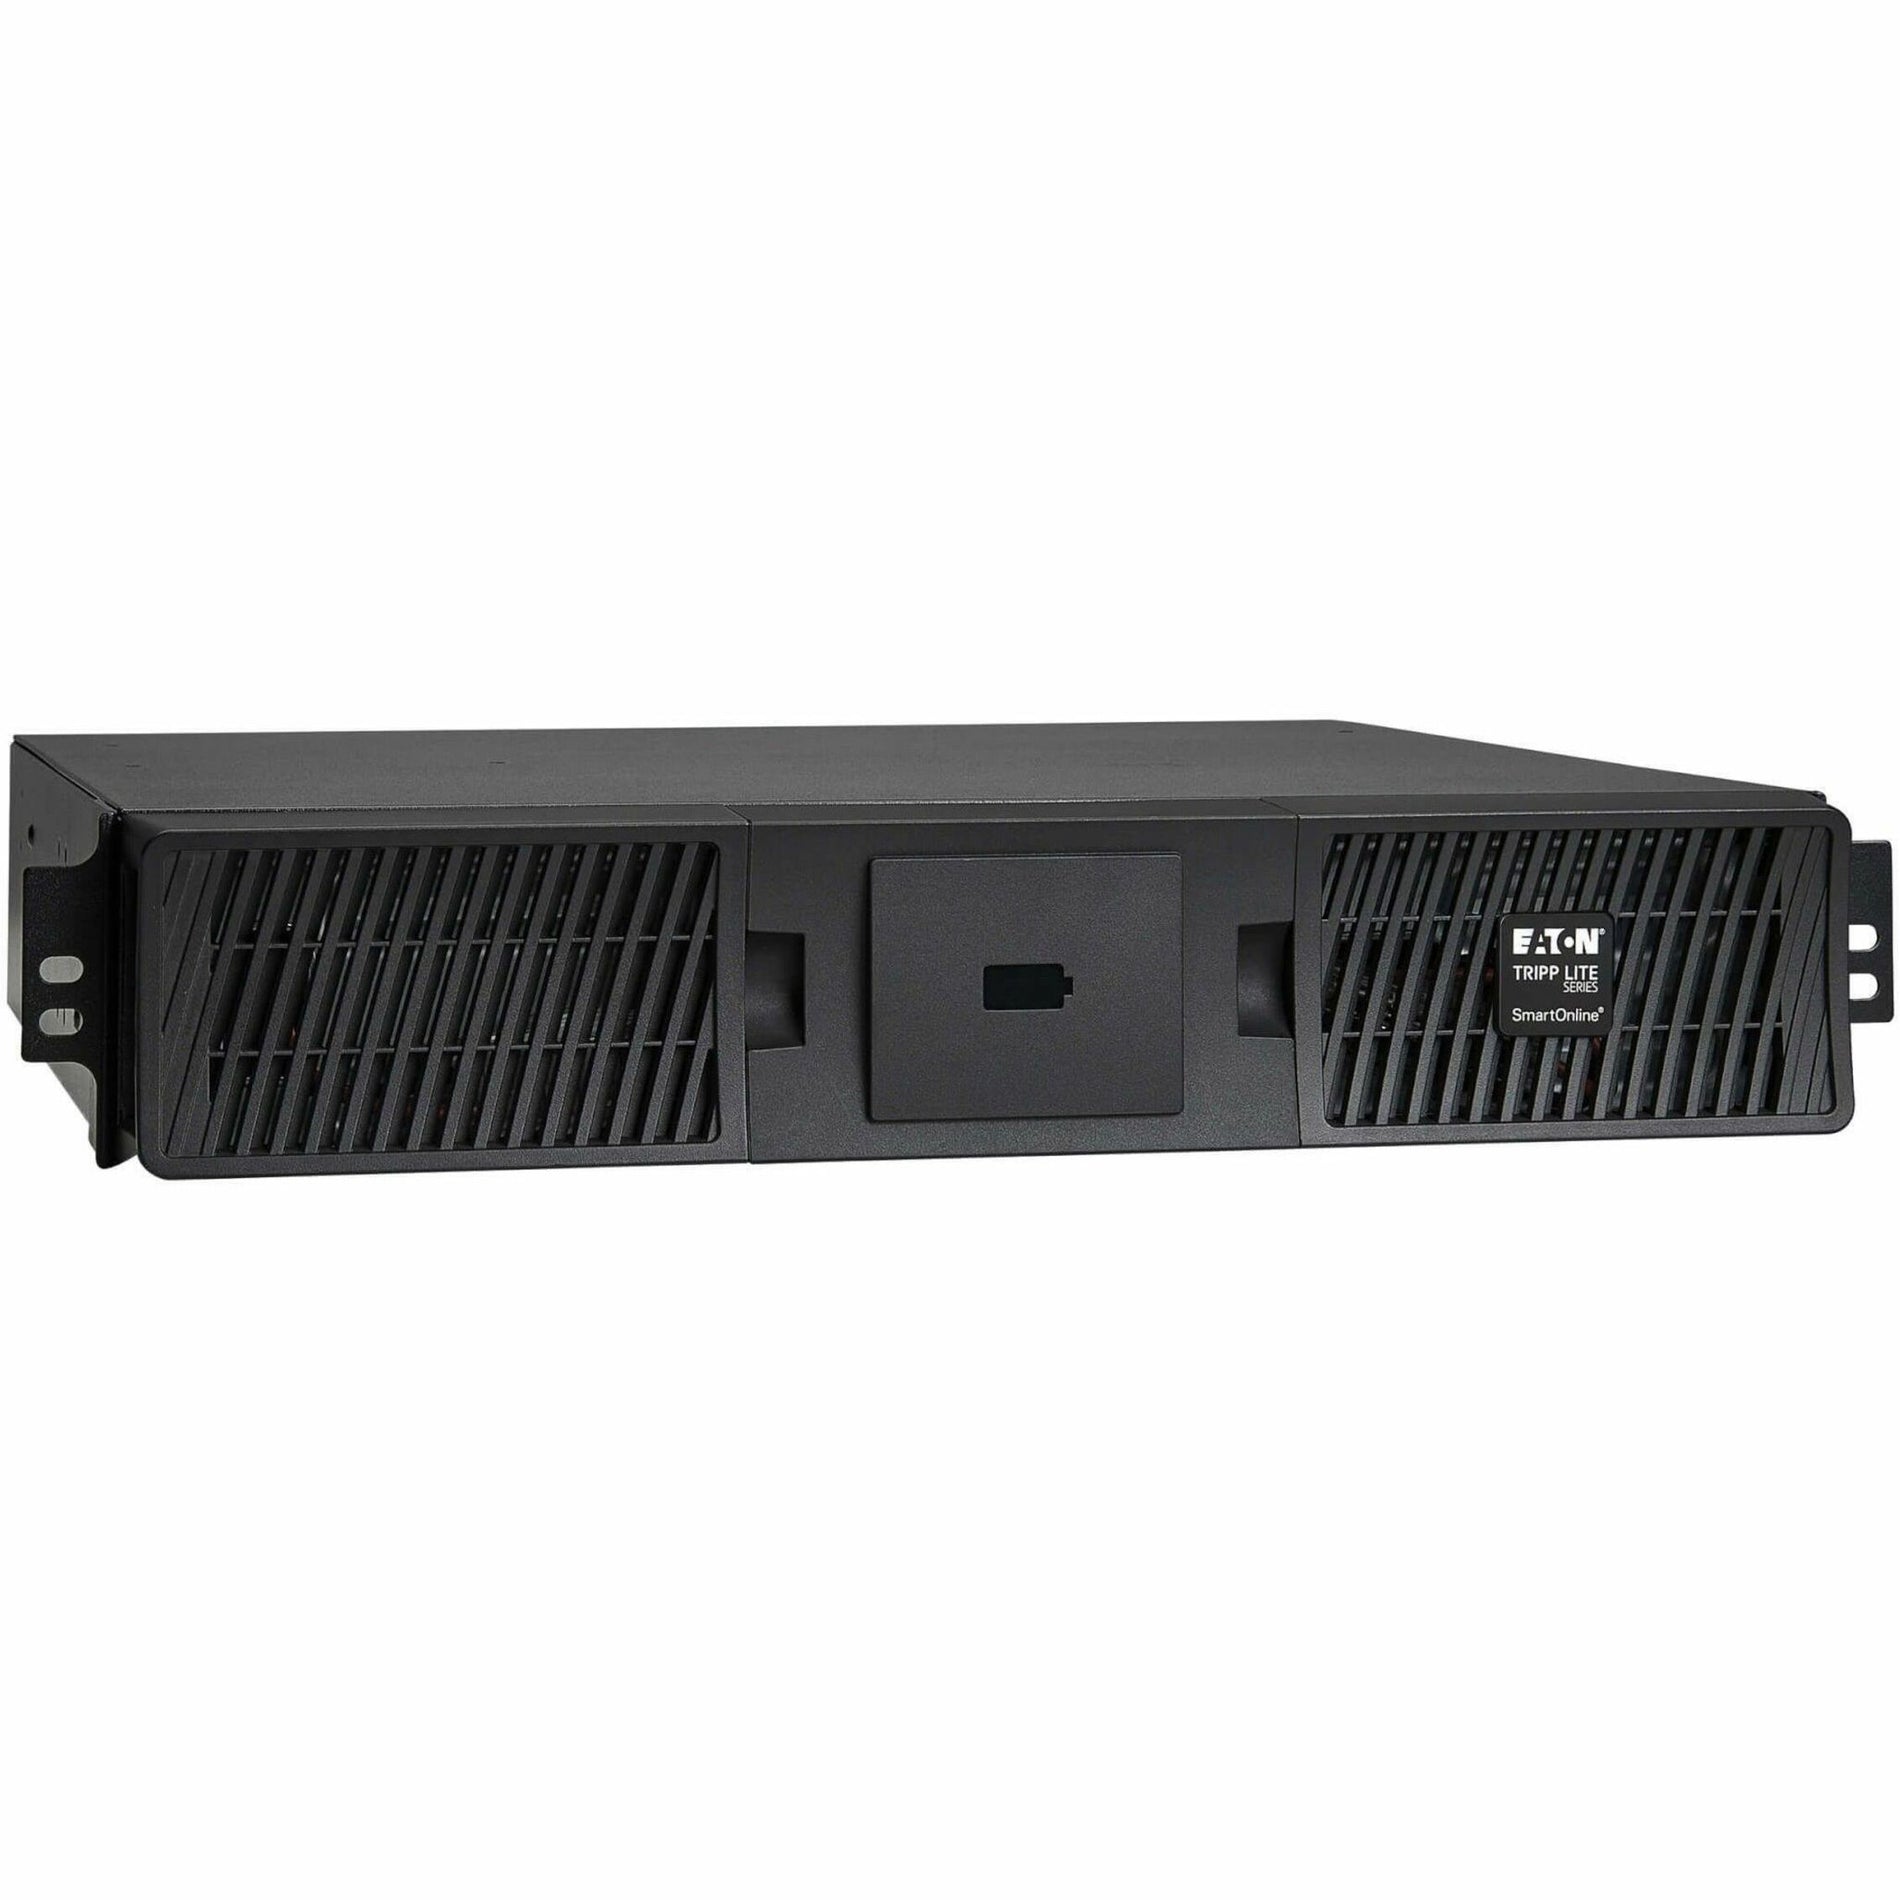 特利普利 BP48RT 48V 扩展电池模块（EBM）SmartOnline UPS 系统，2U 机架/塔 品牌名称：特利普利 特利普利